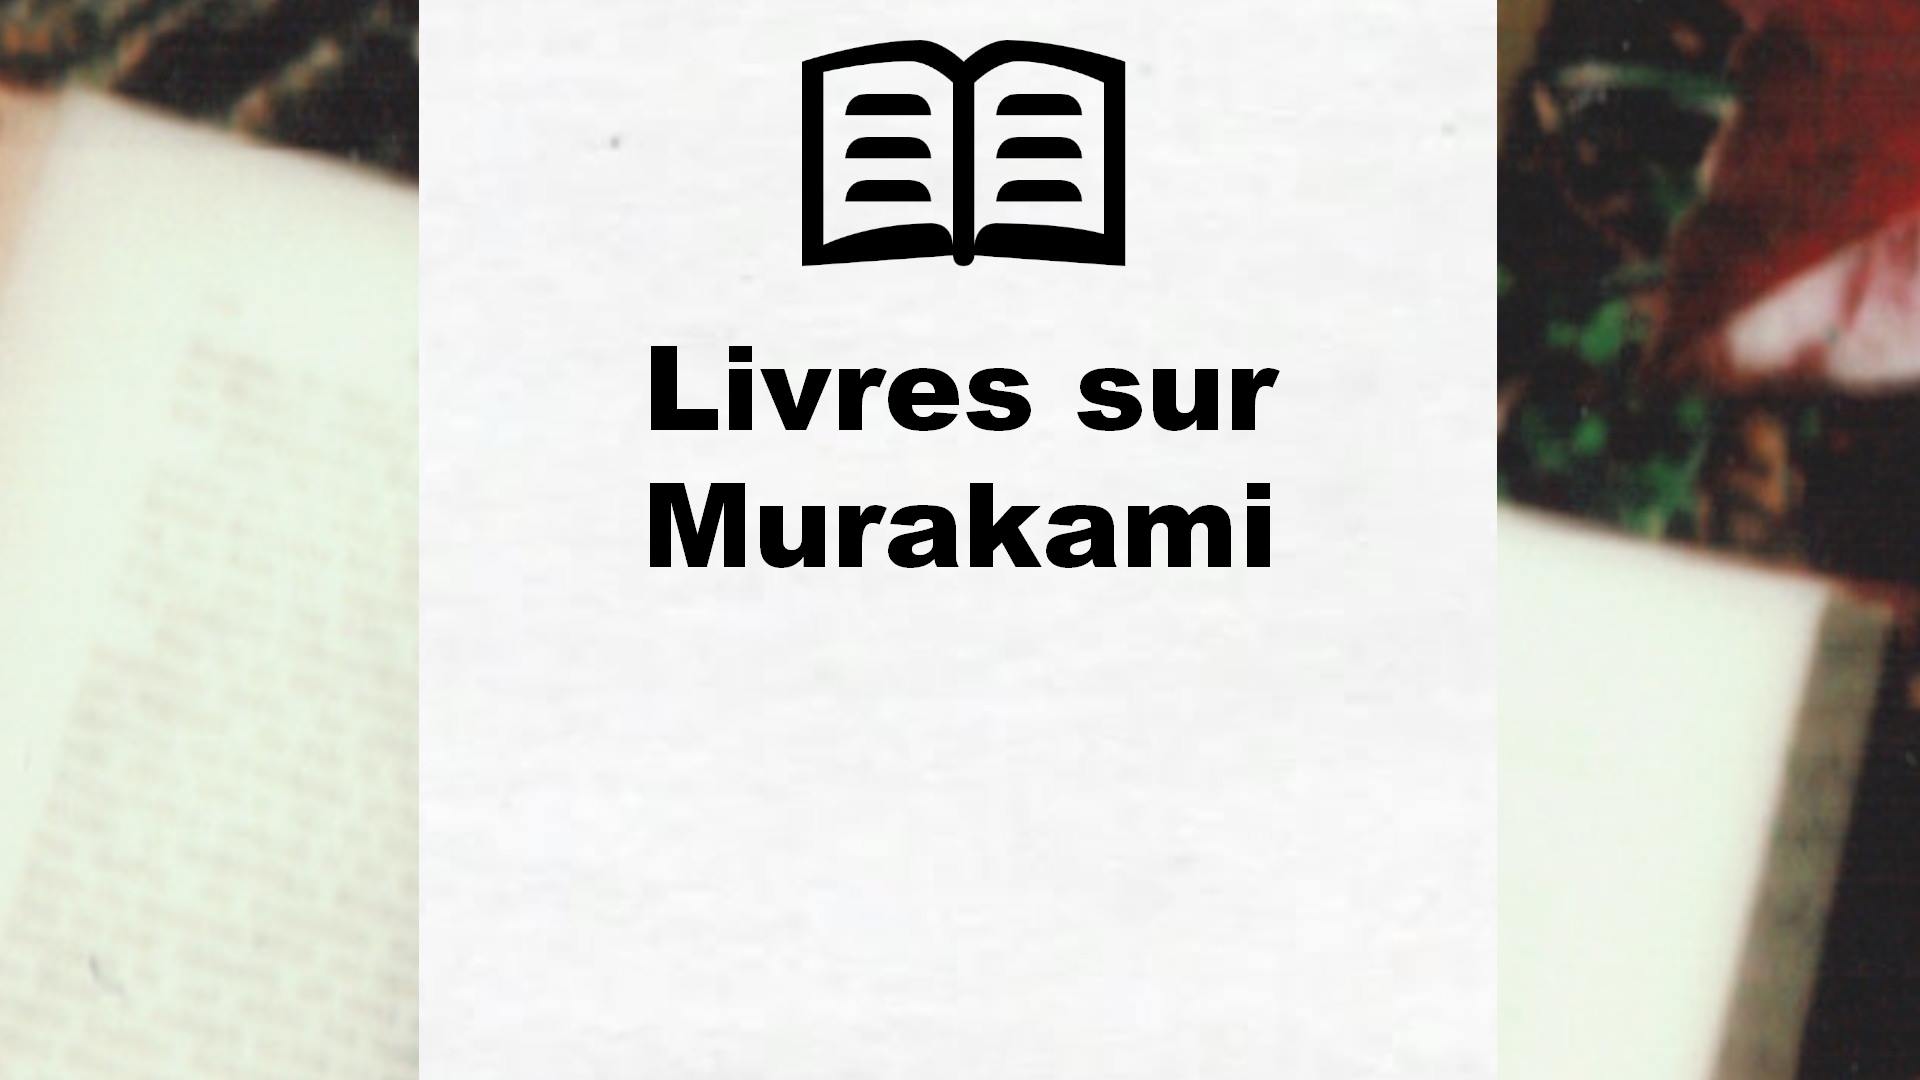 Livres sur Murakami